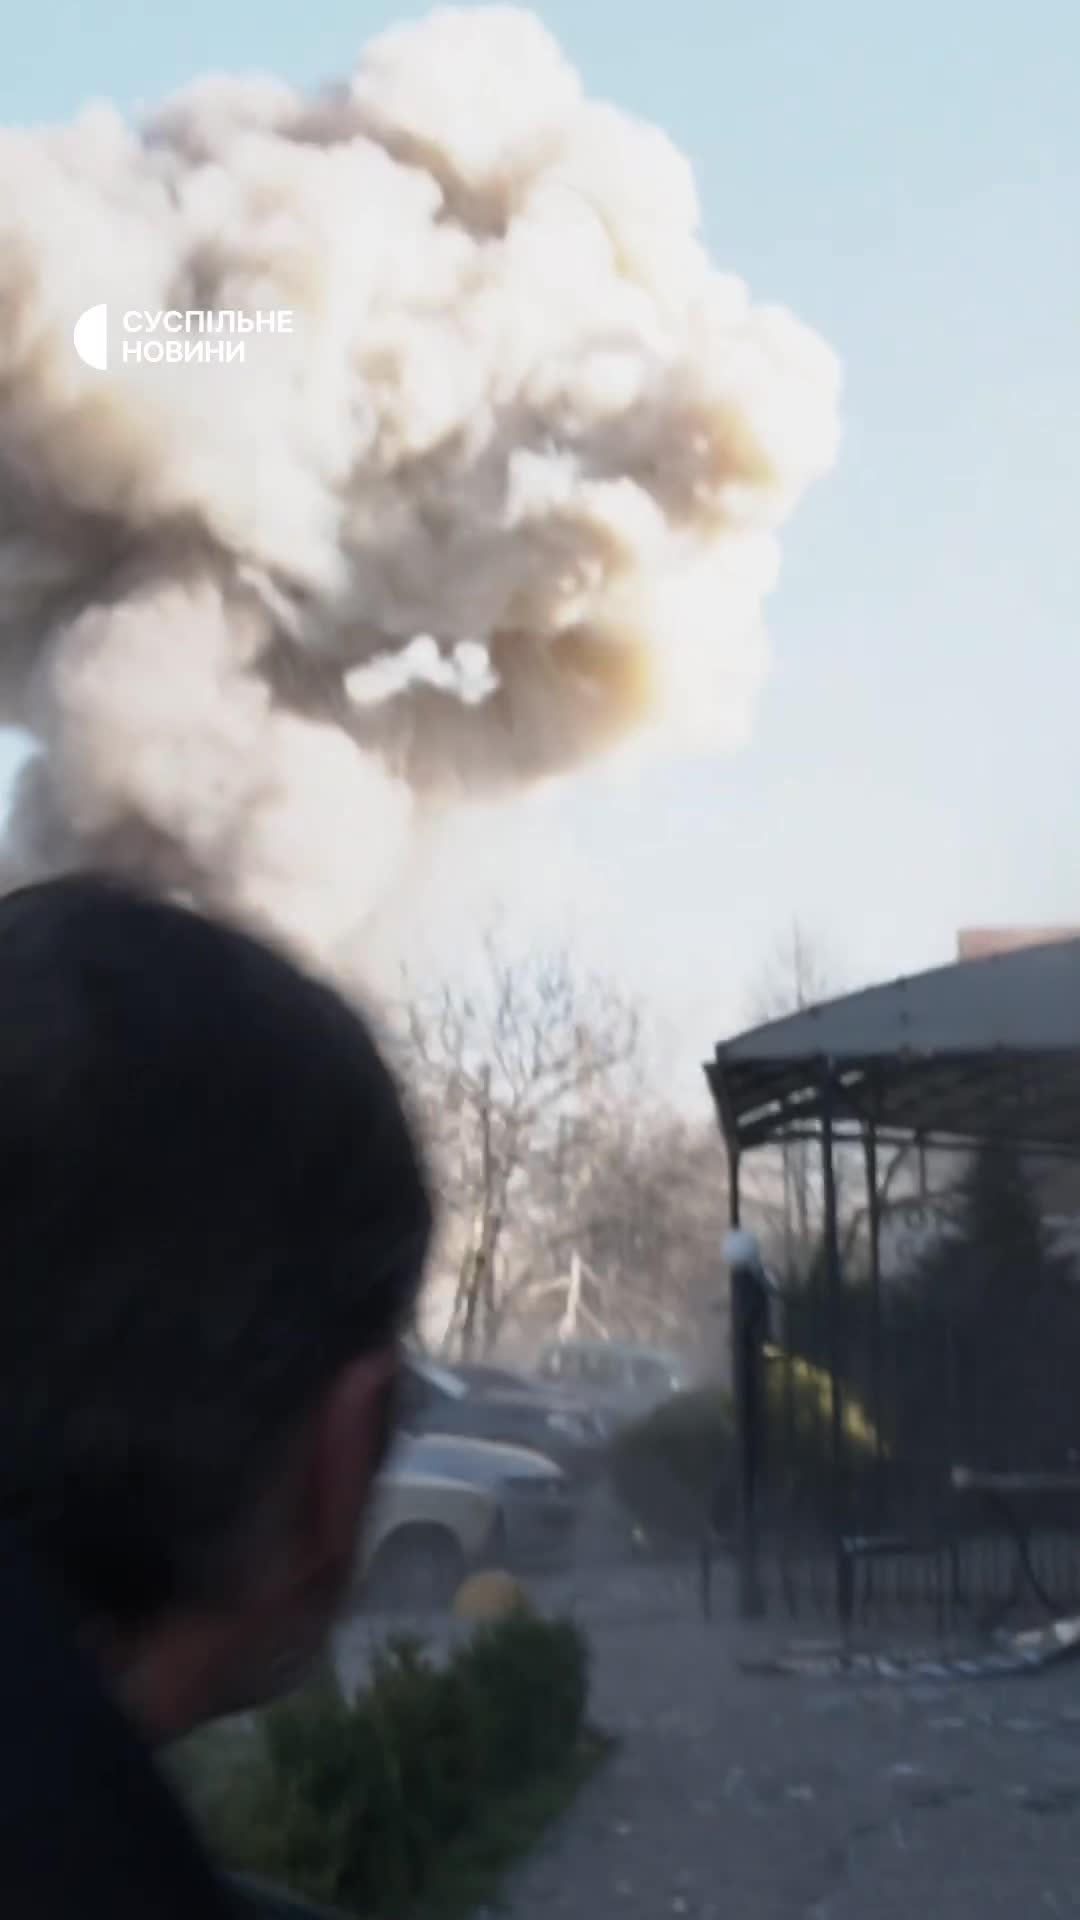 Doppelter Raketenangriff in Saporischschja, während Rettungskräfte, Polizisten und Journalisten vor Ort waren